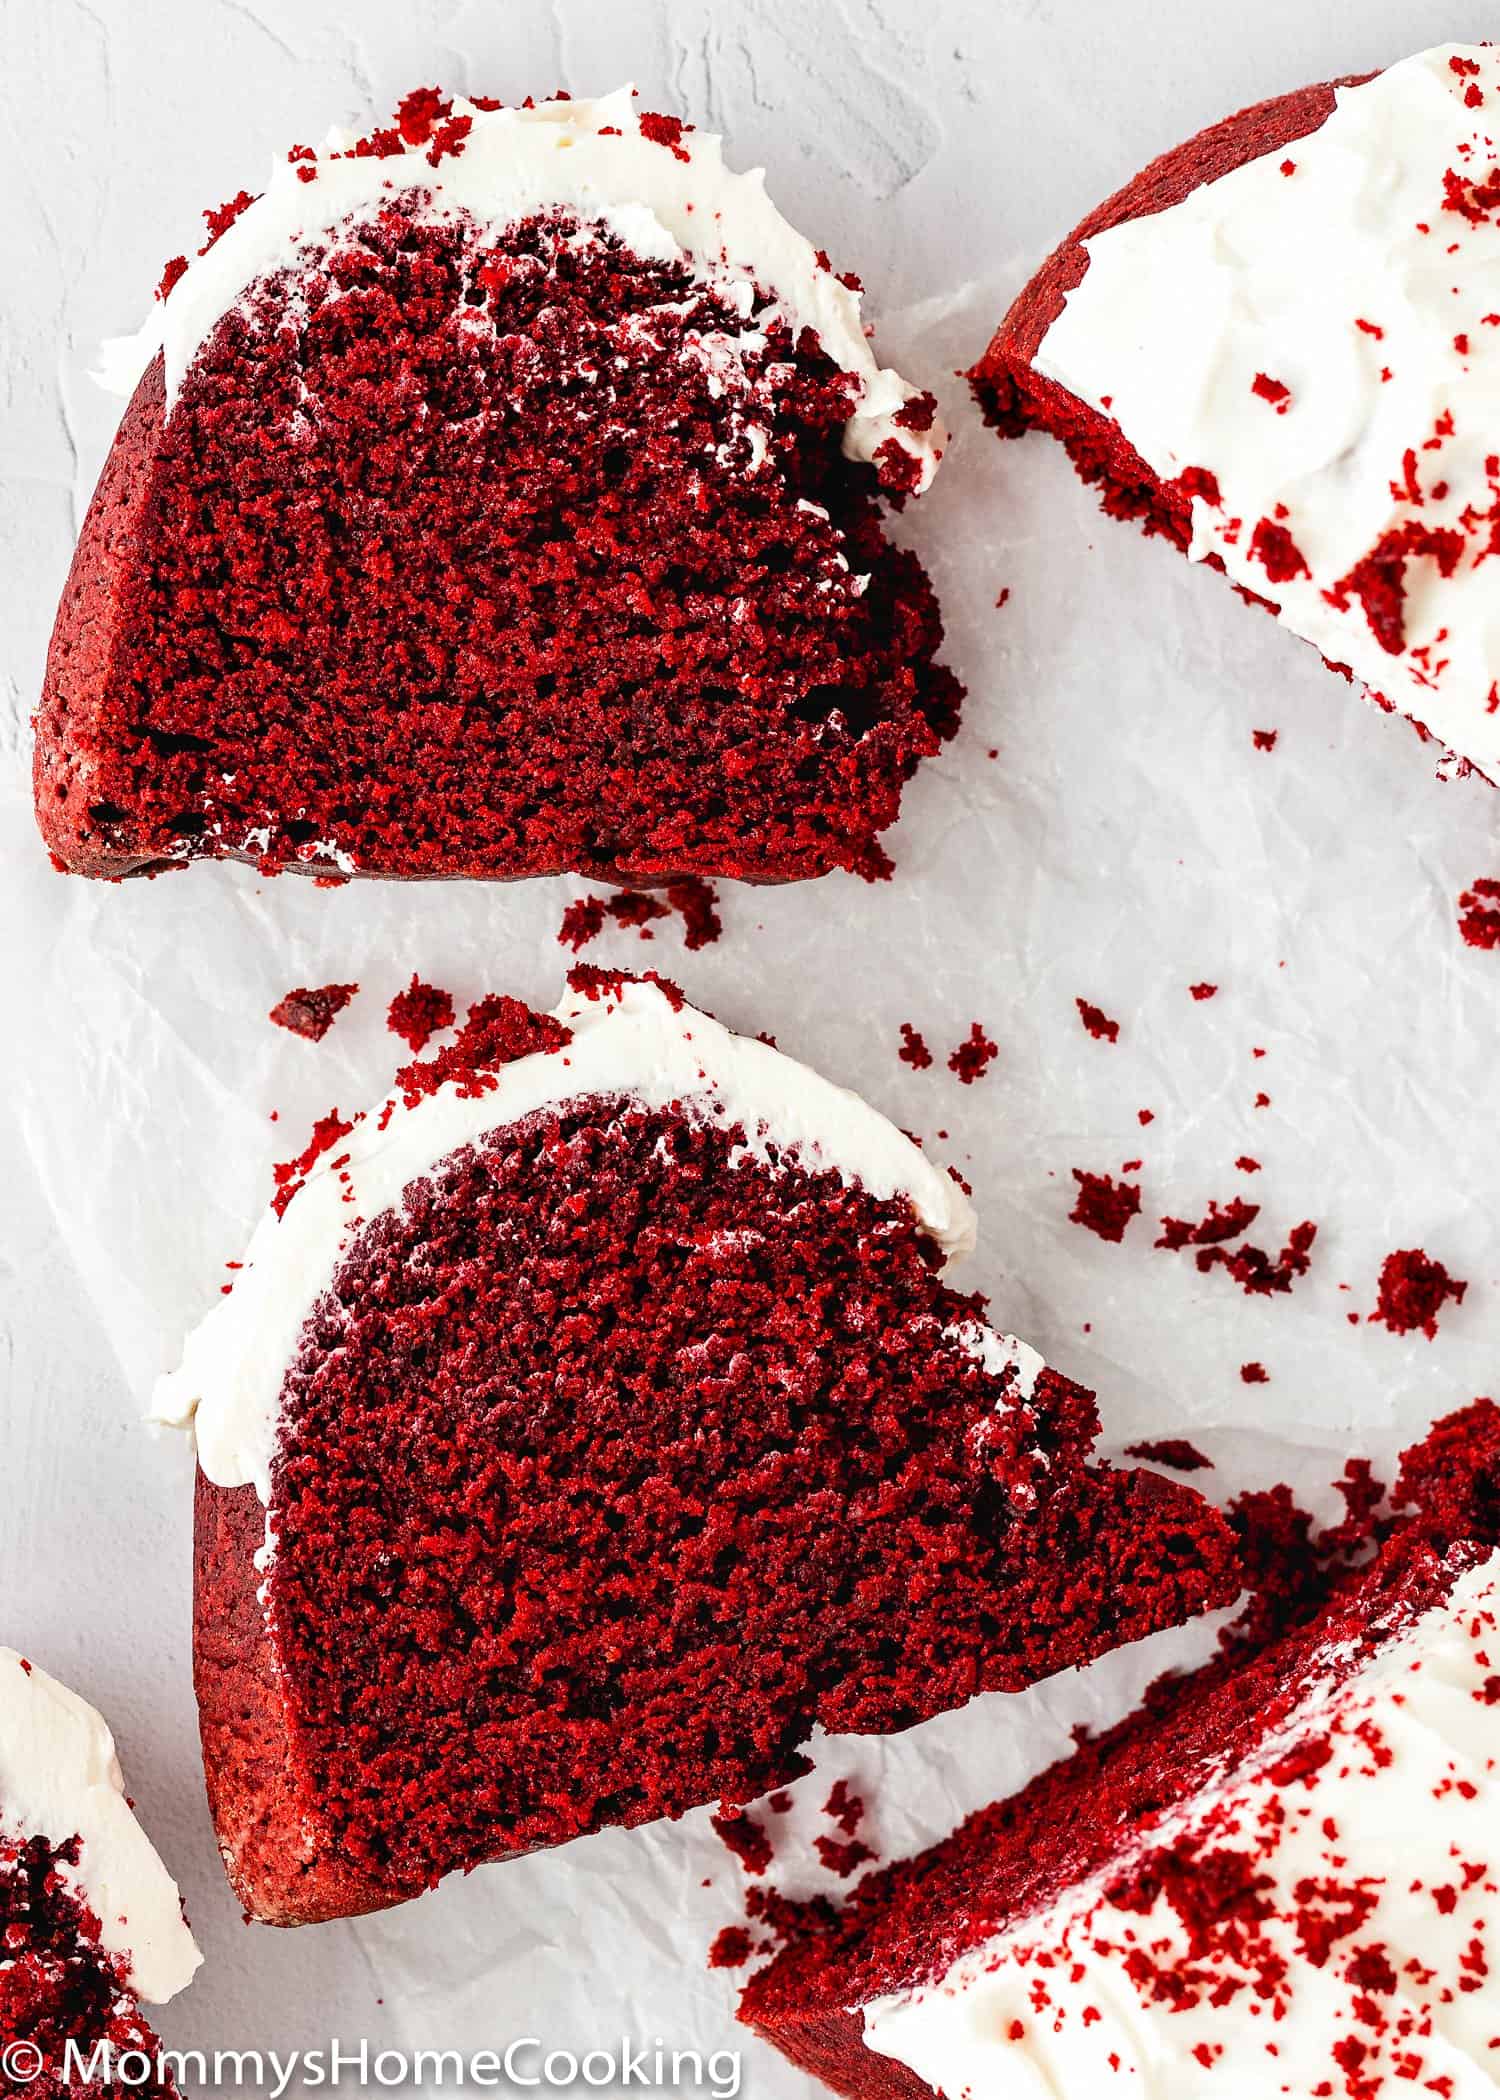 two slices of Eggless Red Velvet Bundt Cake showing inside fluffy texture.